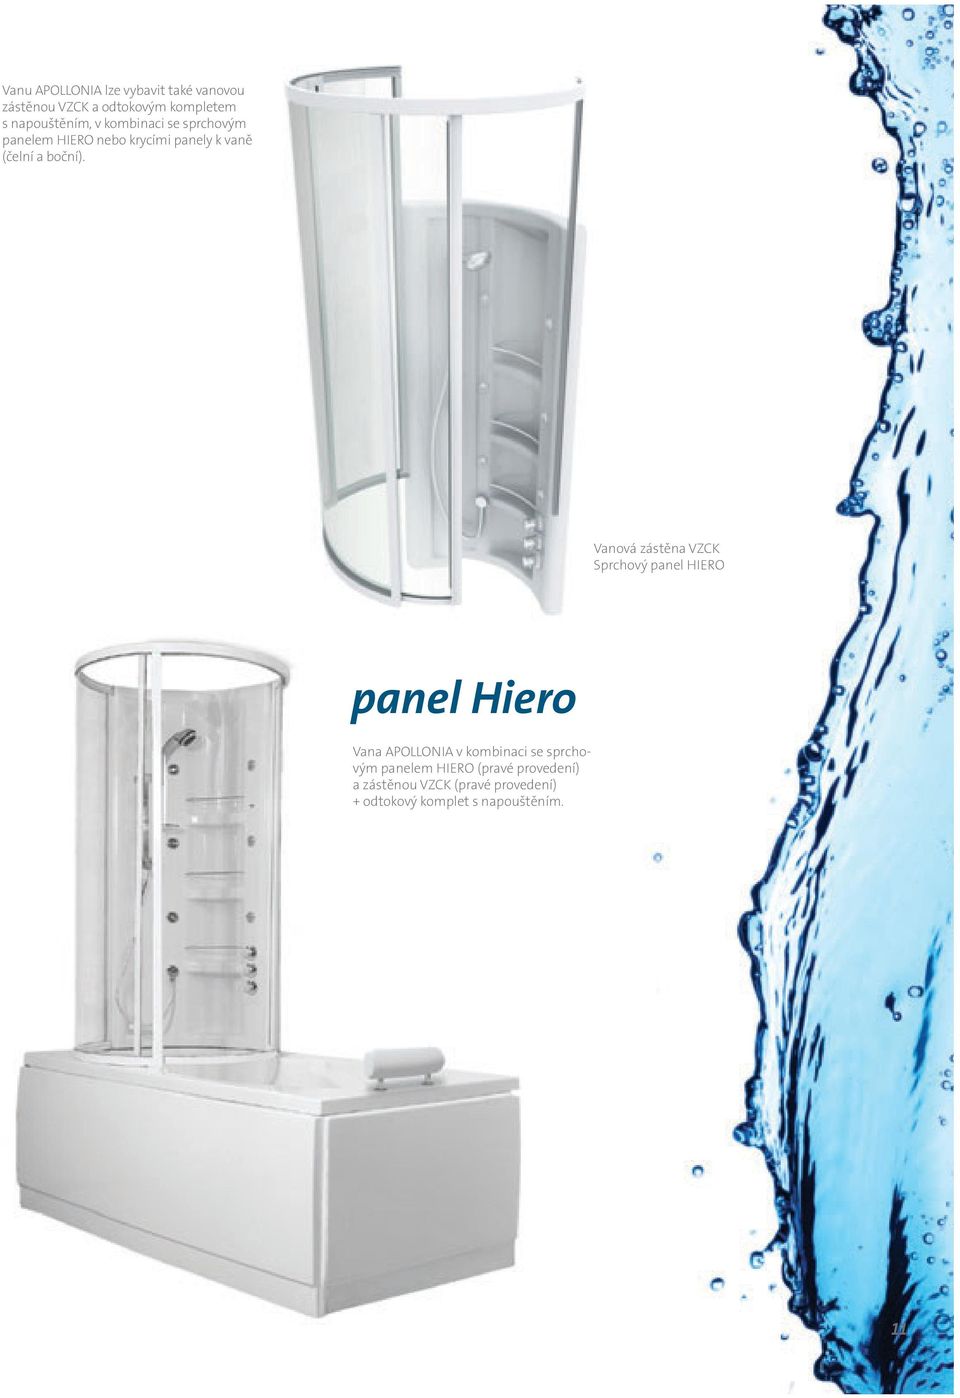 Vanová zástěna VZCK Sprchový panel HIERO panel Hiero Vana APOLLONIA v kombinaci se sprchovým